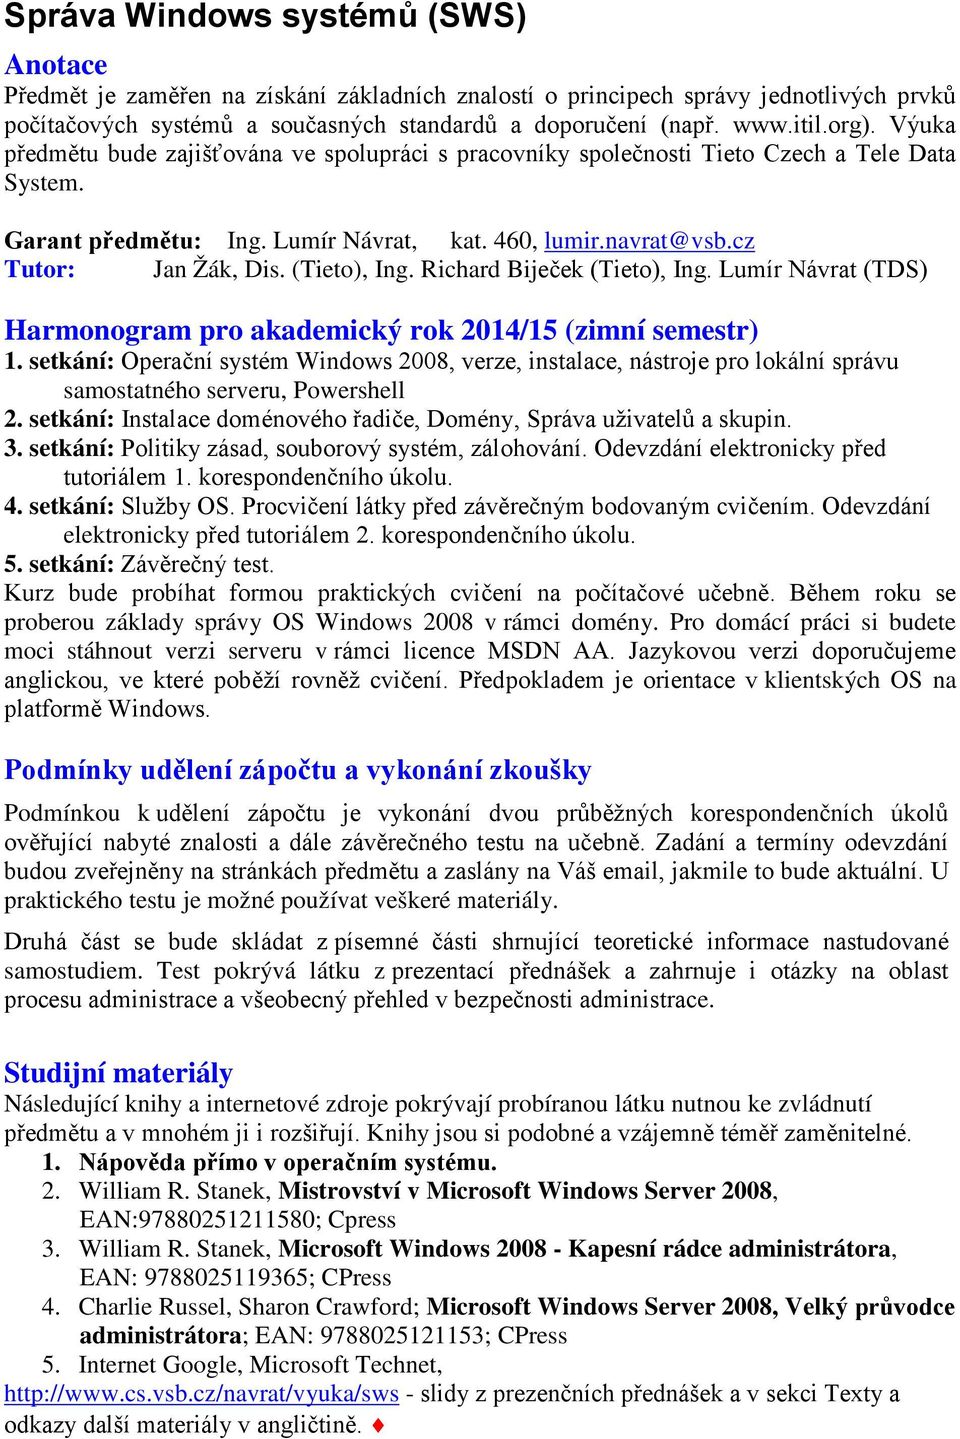 (Tieto), Ing. Richard Biječek (Tieto), Ing. Lumír Návrat (TDS) Harmonogram pro akademický rok 2014/15 (zimní semestr) 1.